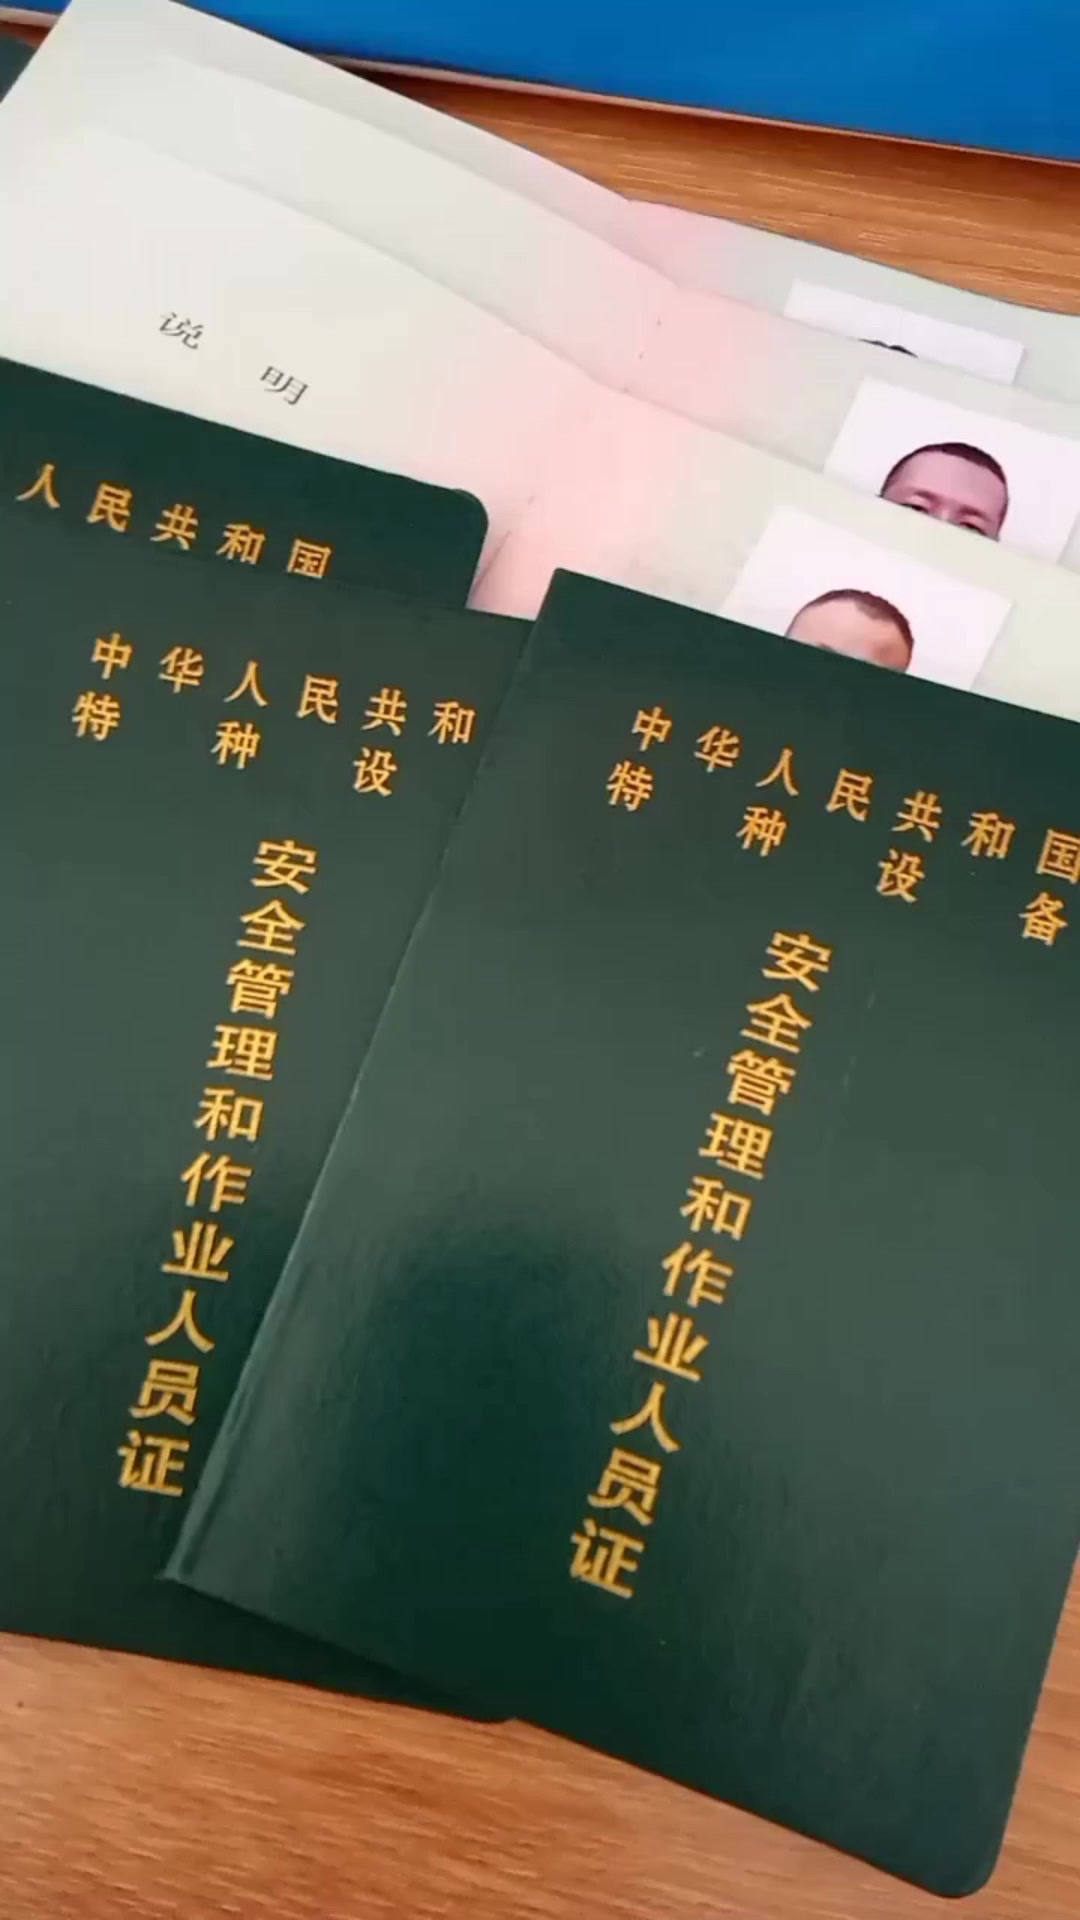 广州叉车考证培训视频教程，广州叉车考证理论题目